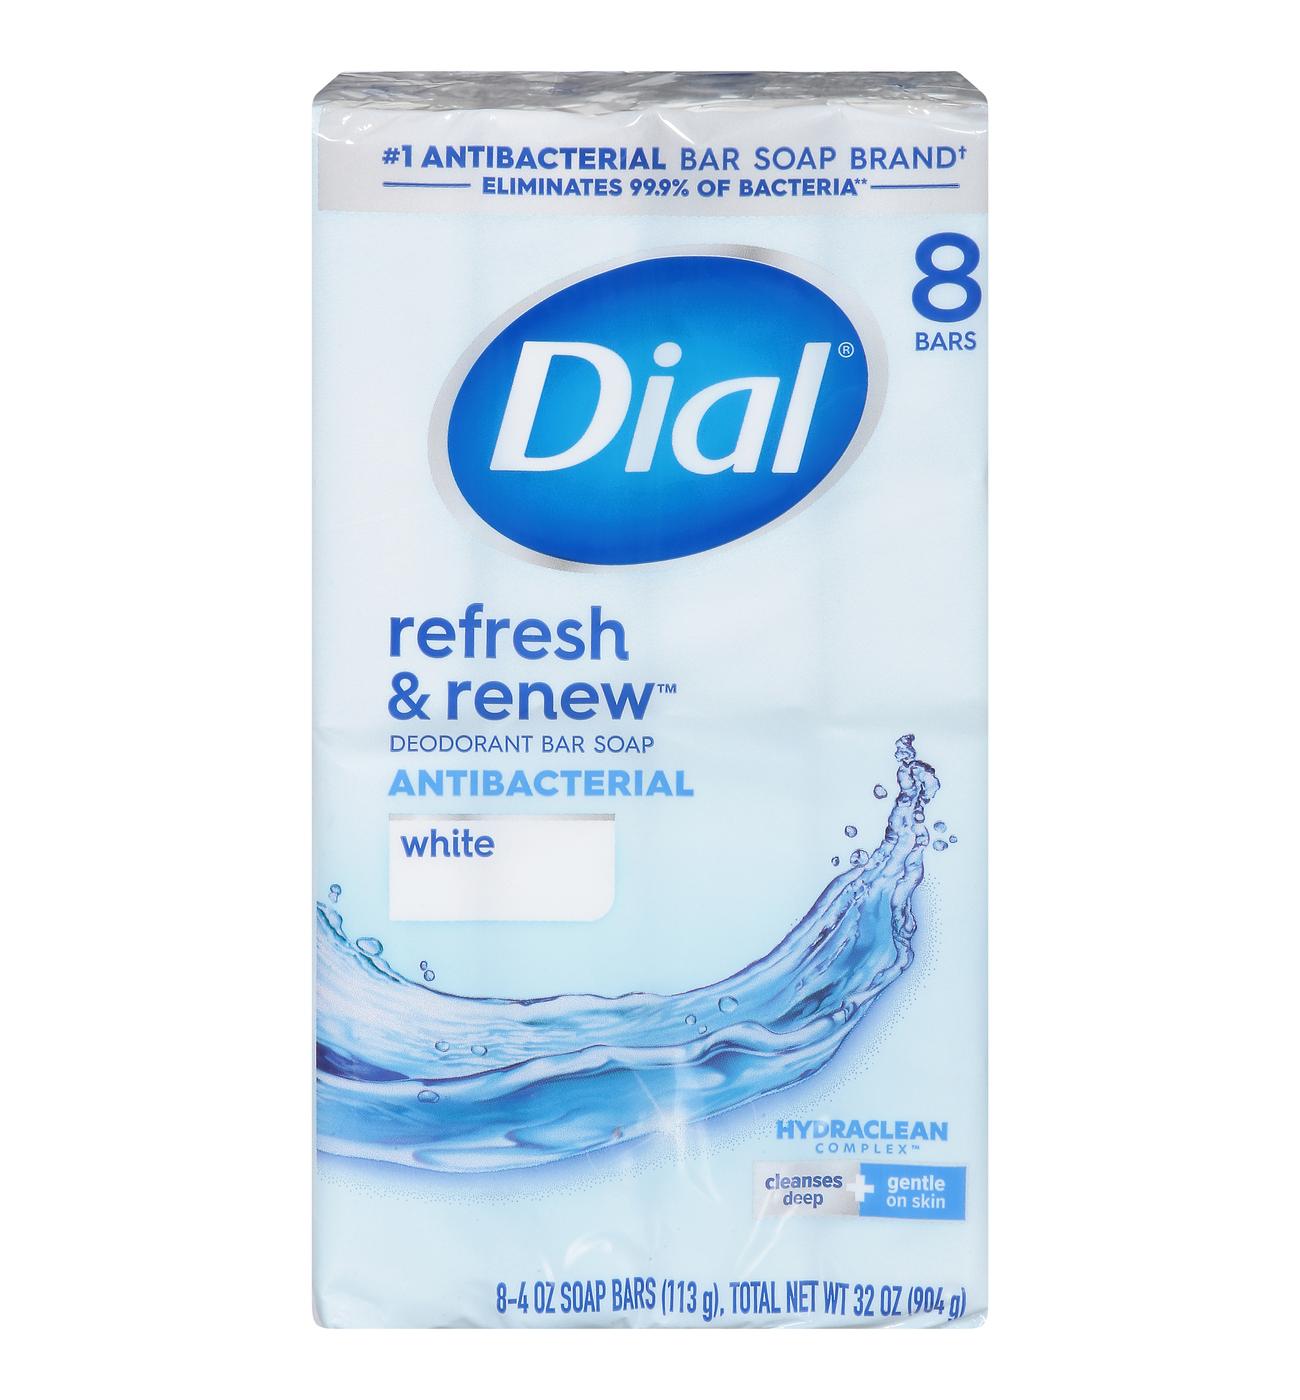 Dial Antibacterial Deodorant Bar Soap - White; image 1 of 6